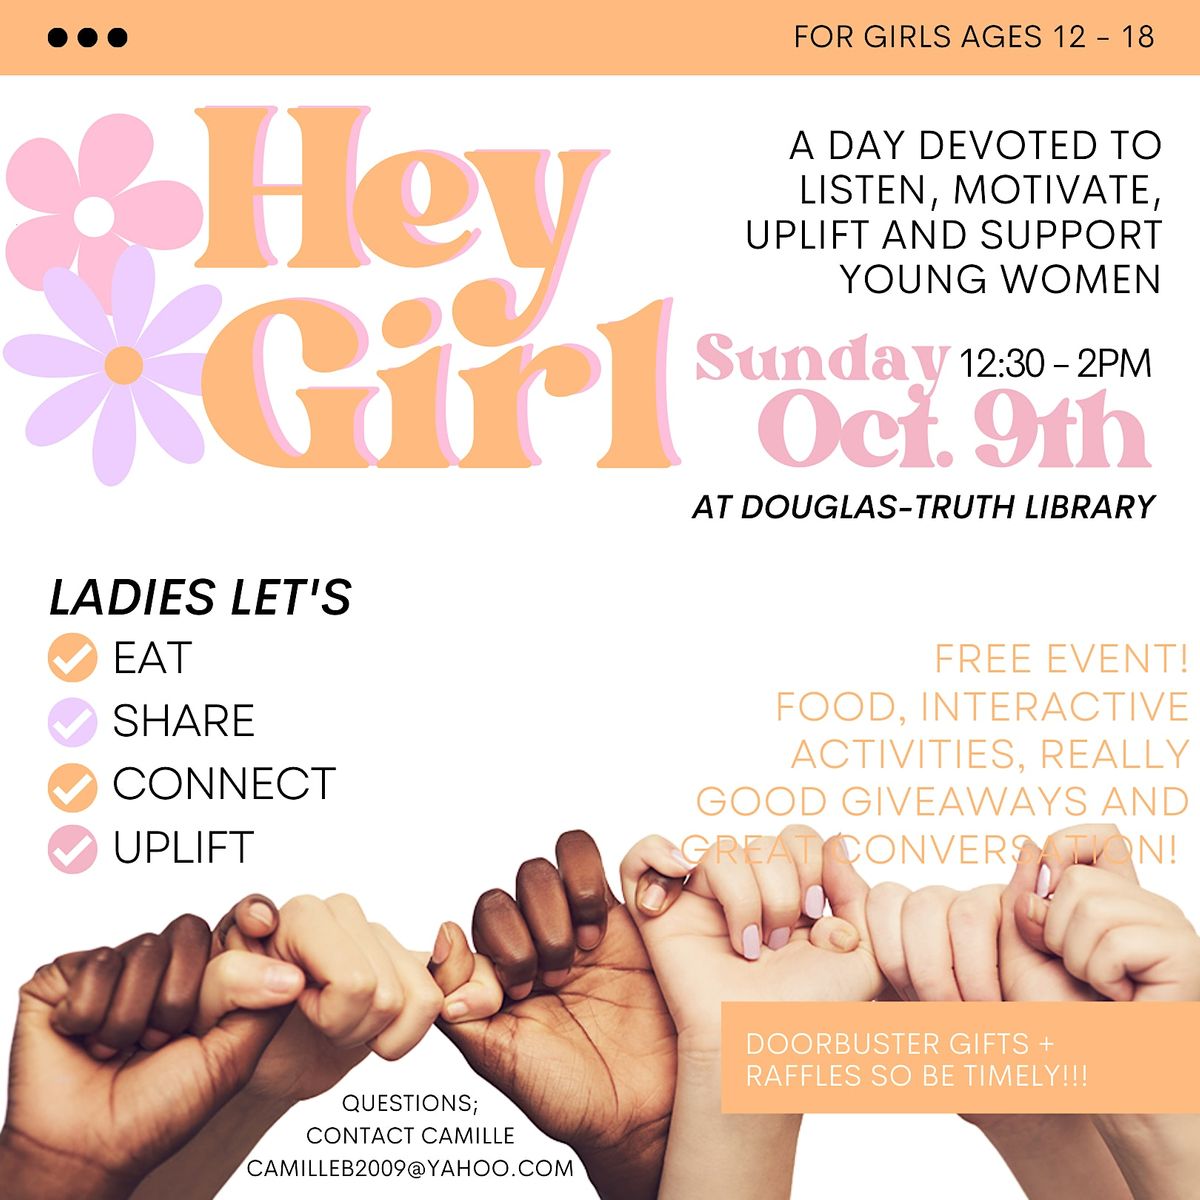 Hey Girl: An Empowerment Event for Teen Girls